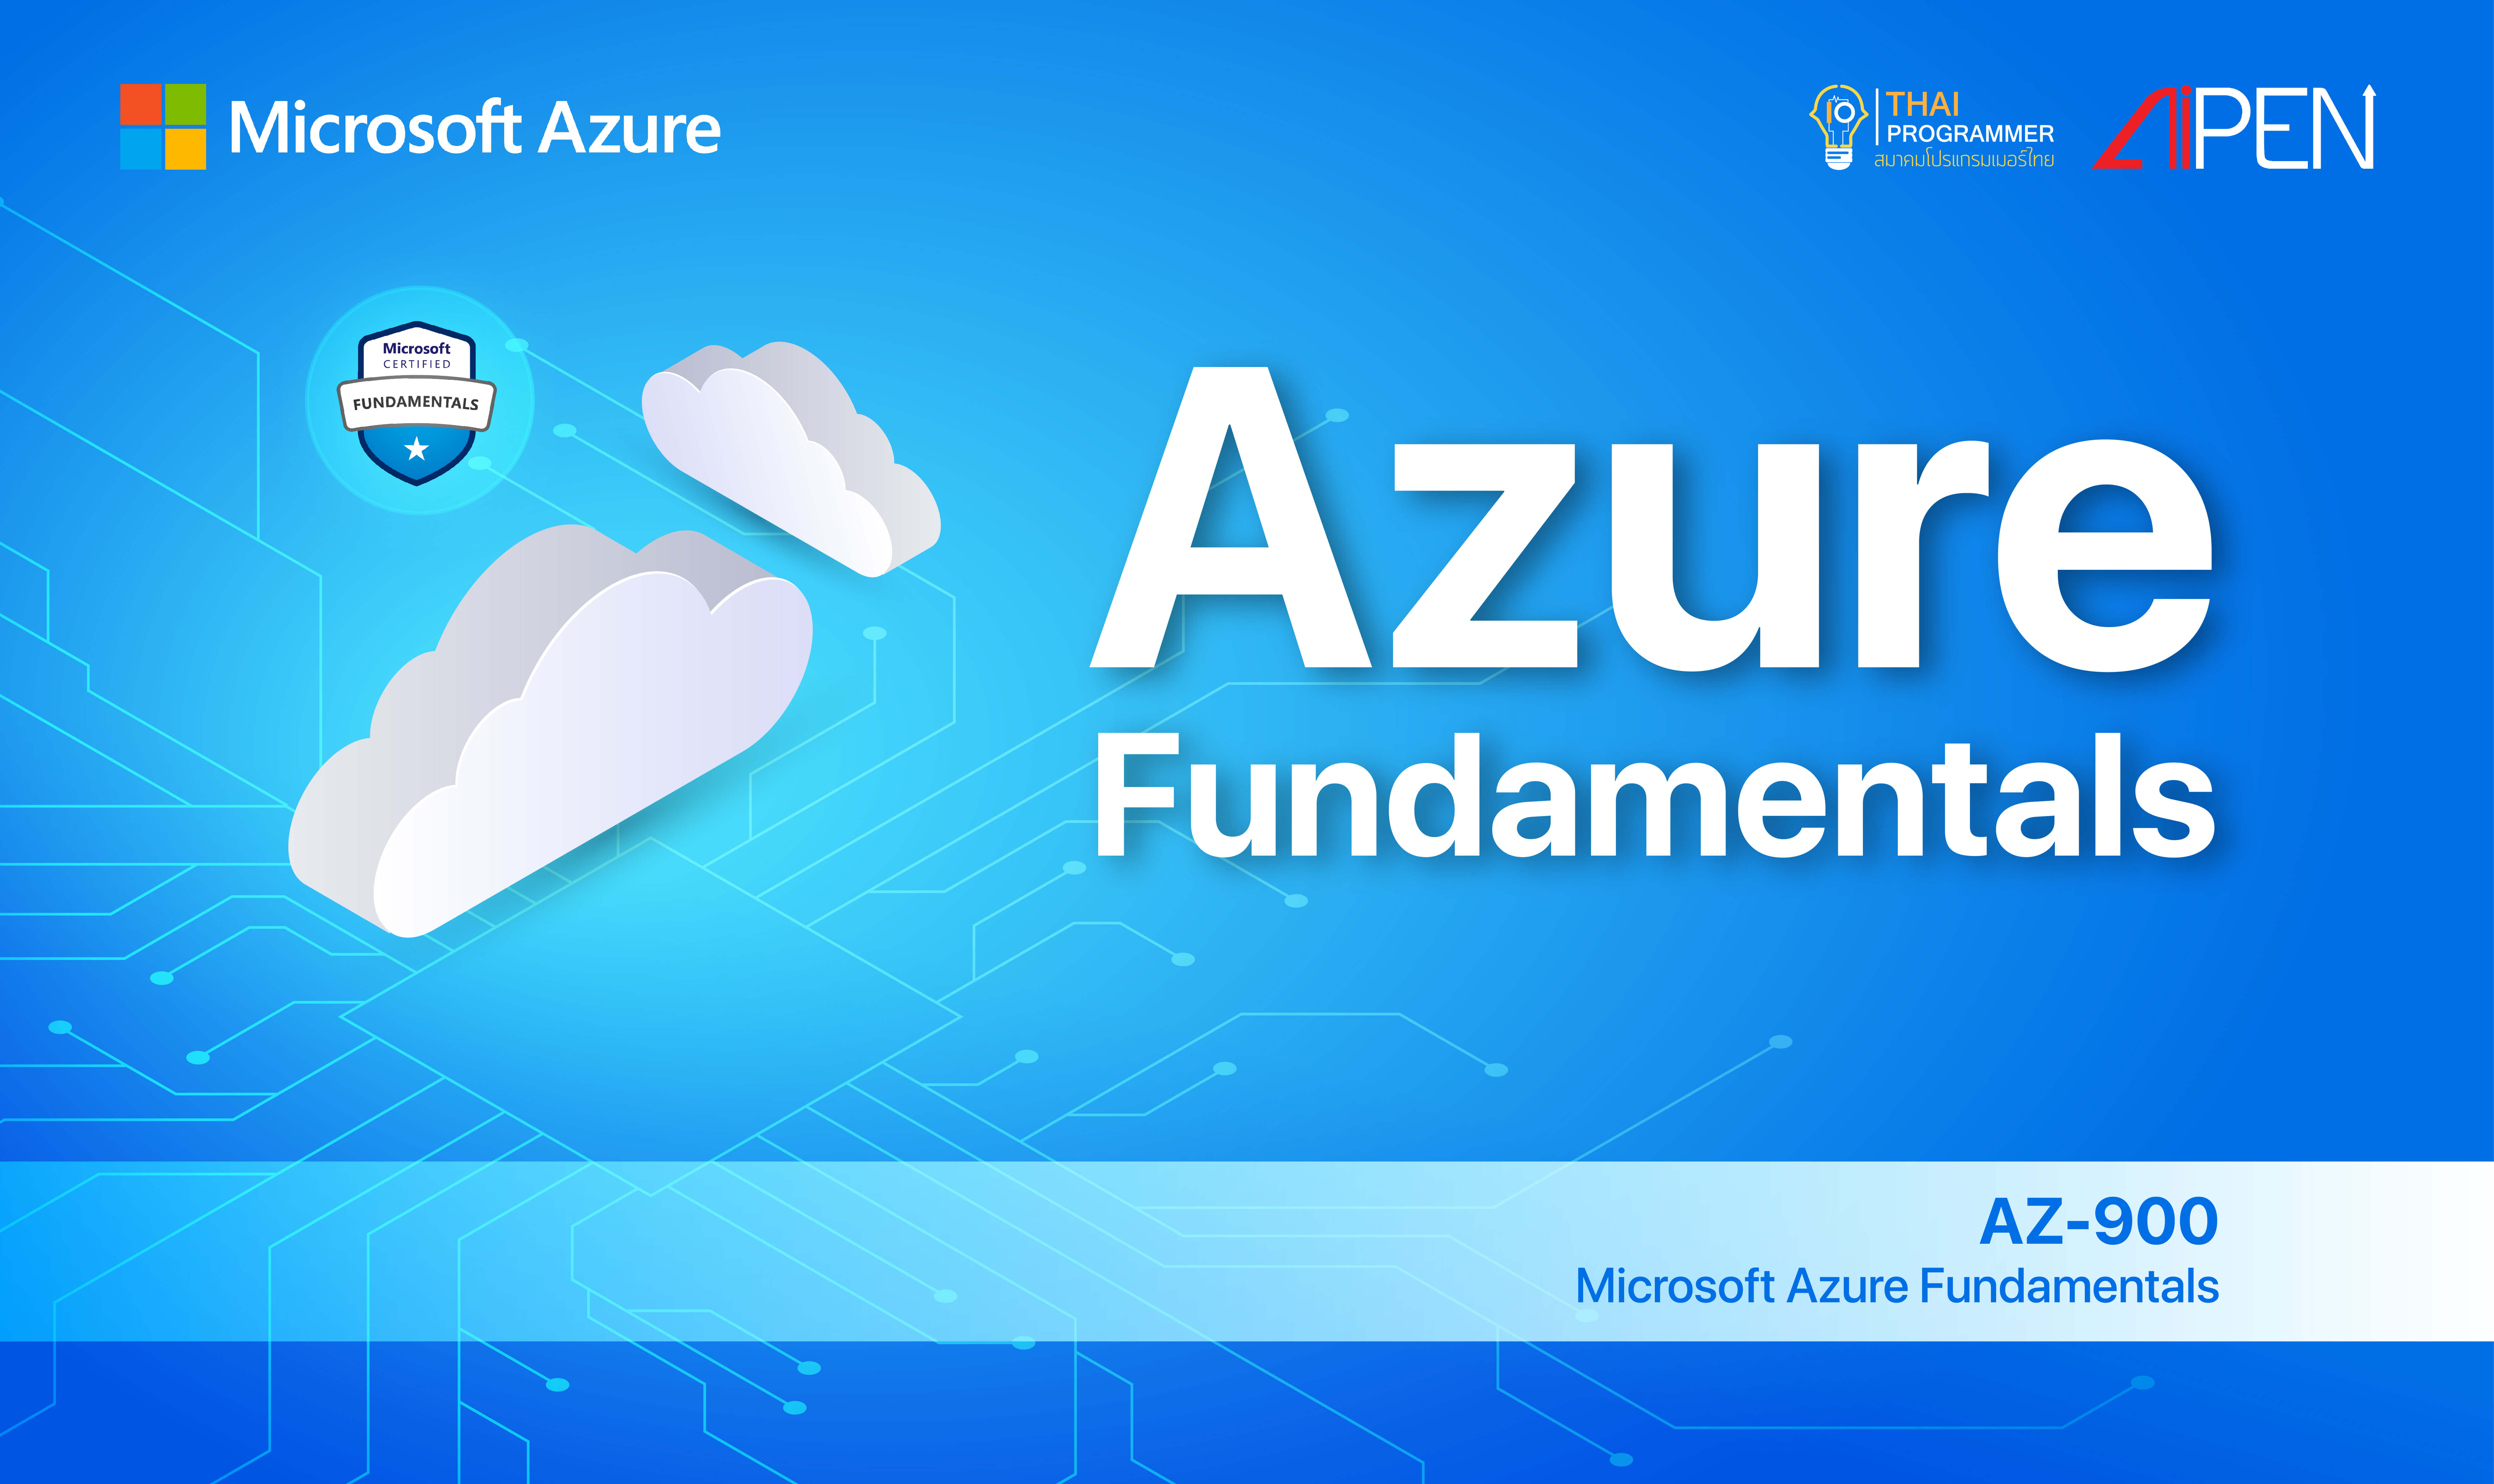 Azure fundamentals